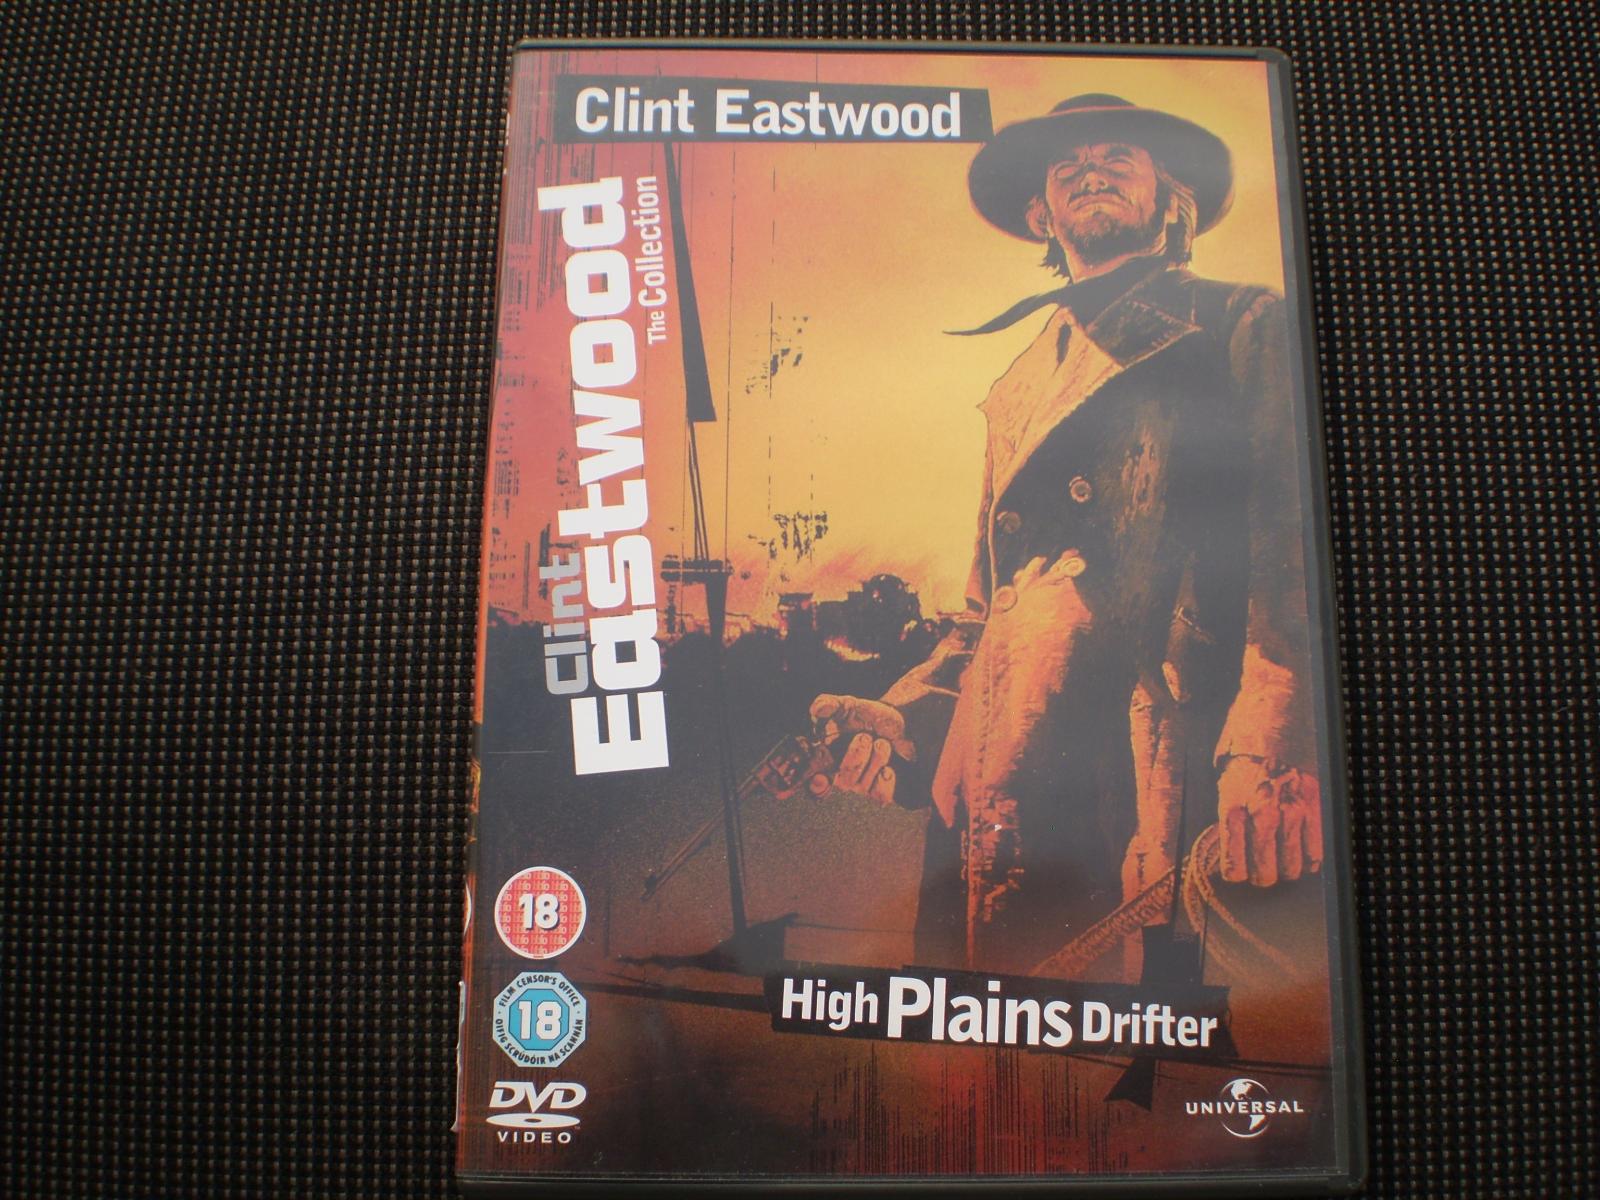 Tulák z širých plání (DVD), režie Clint Eastwood, výtečně zachováno - Film